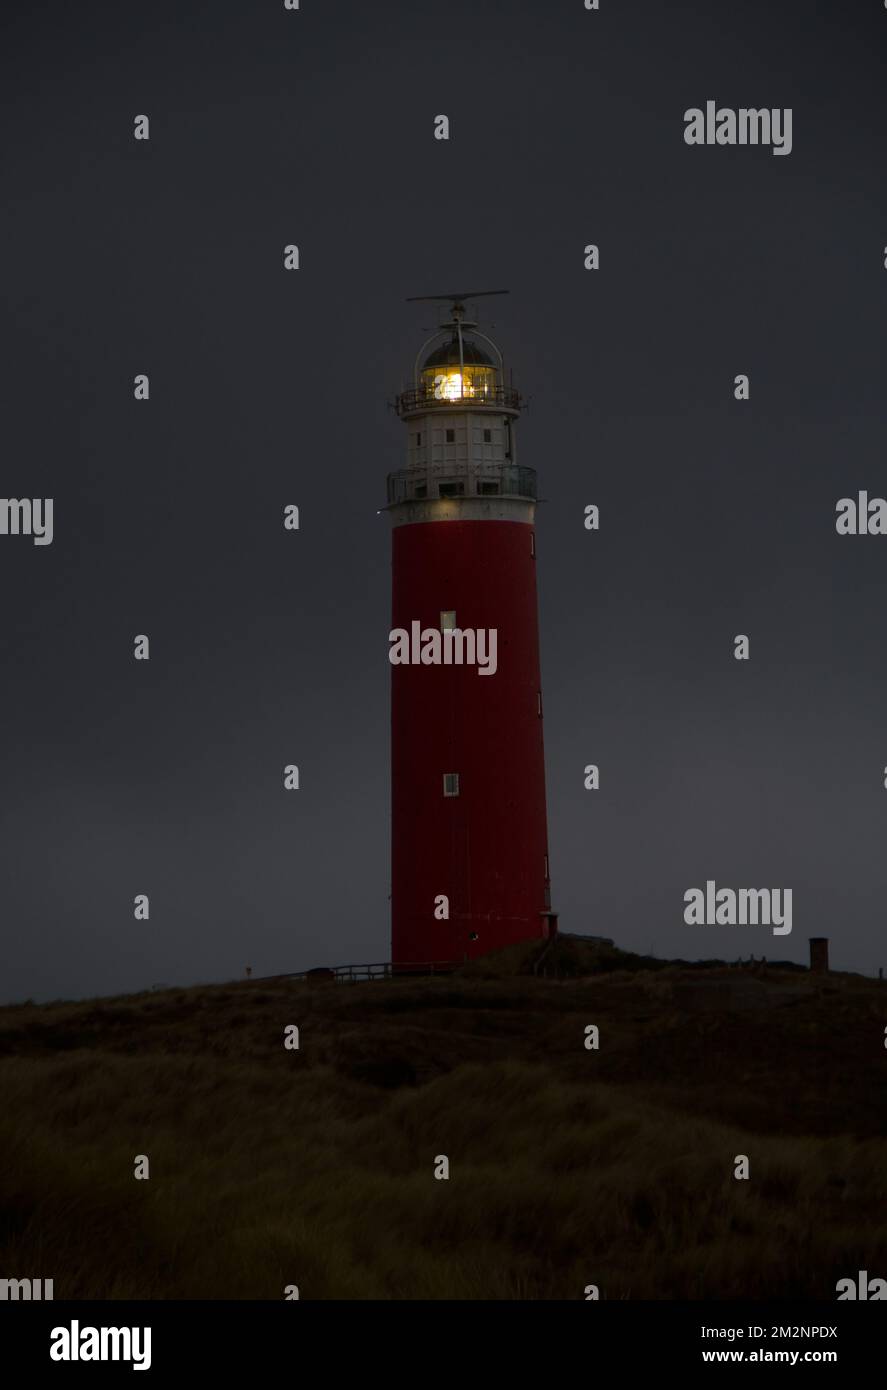 Le phare Eierland sur l'île hollandaise Texel dans la mer de Wadden, la nuit Banque D'Images